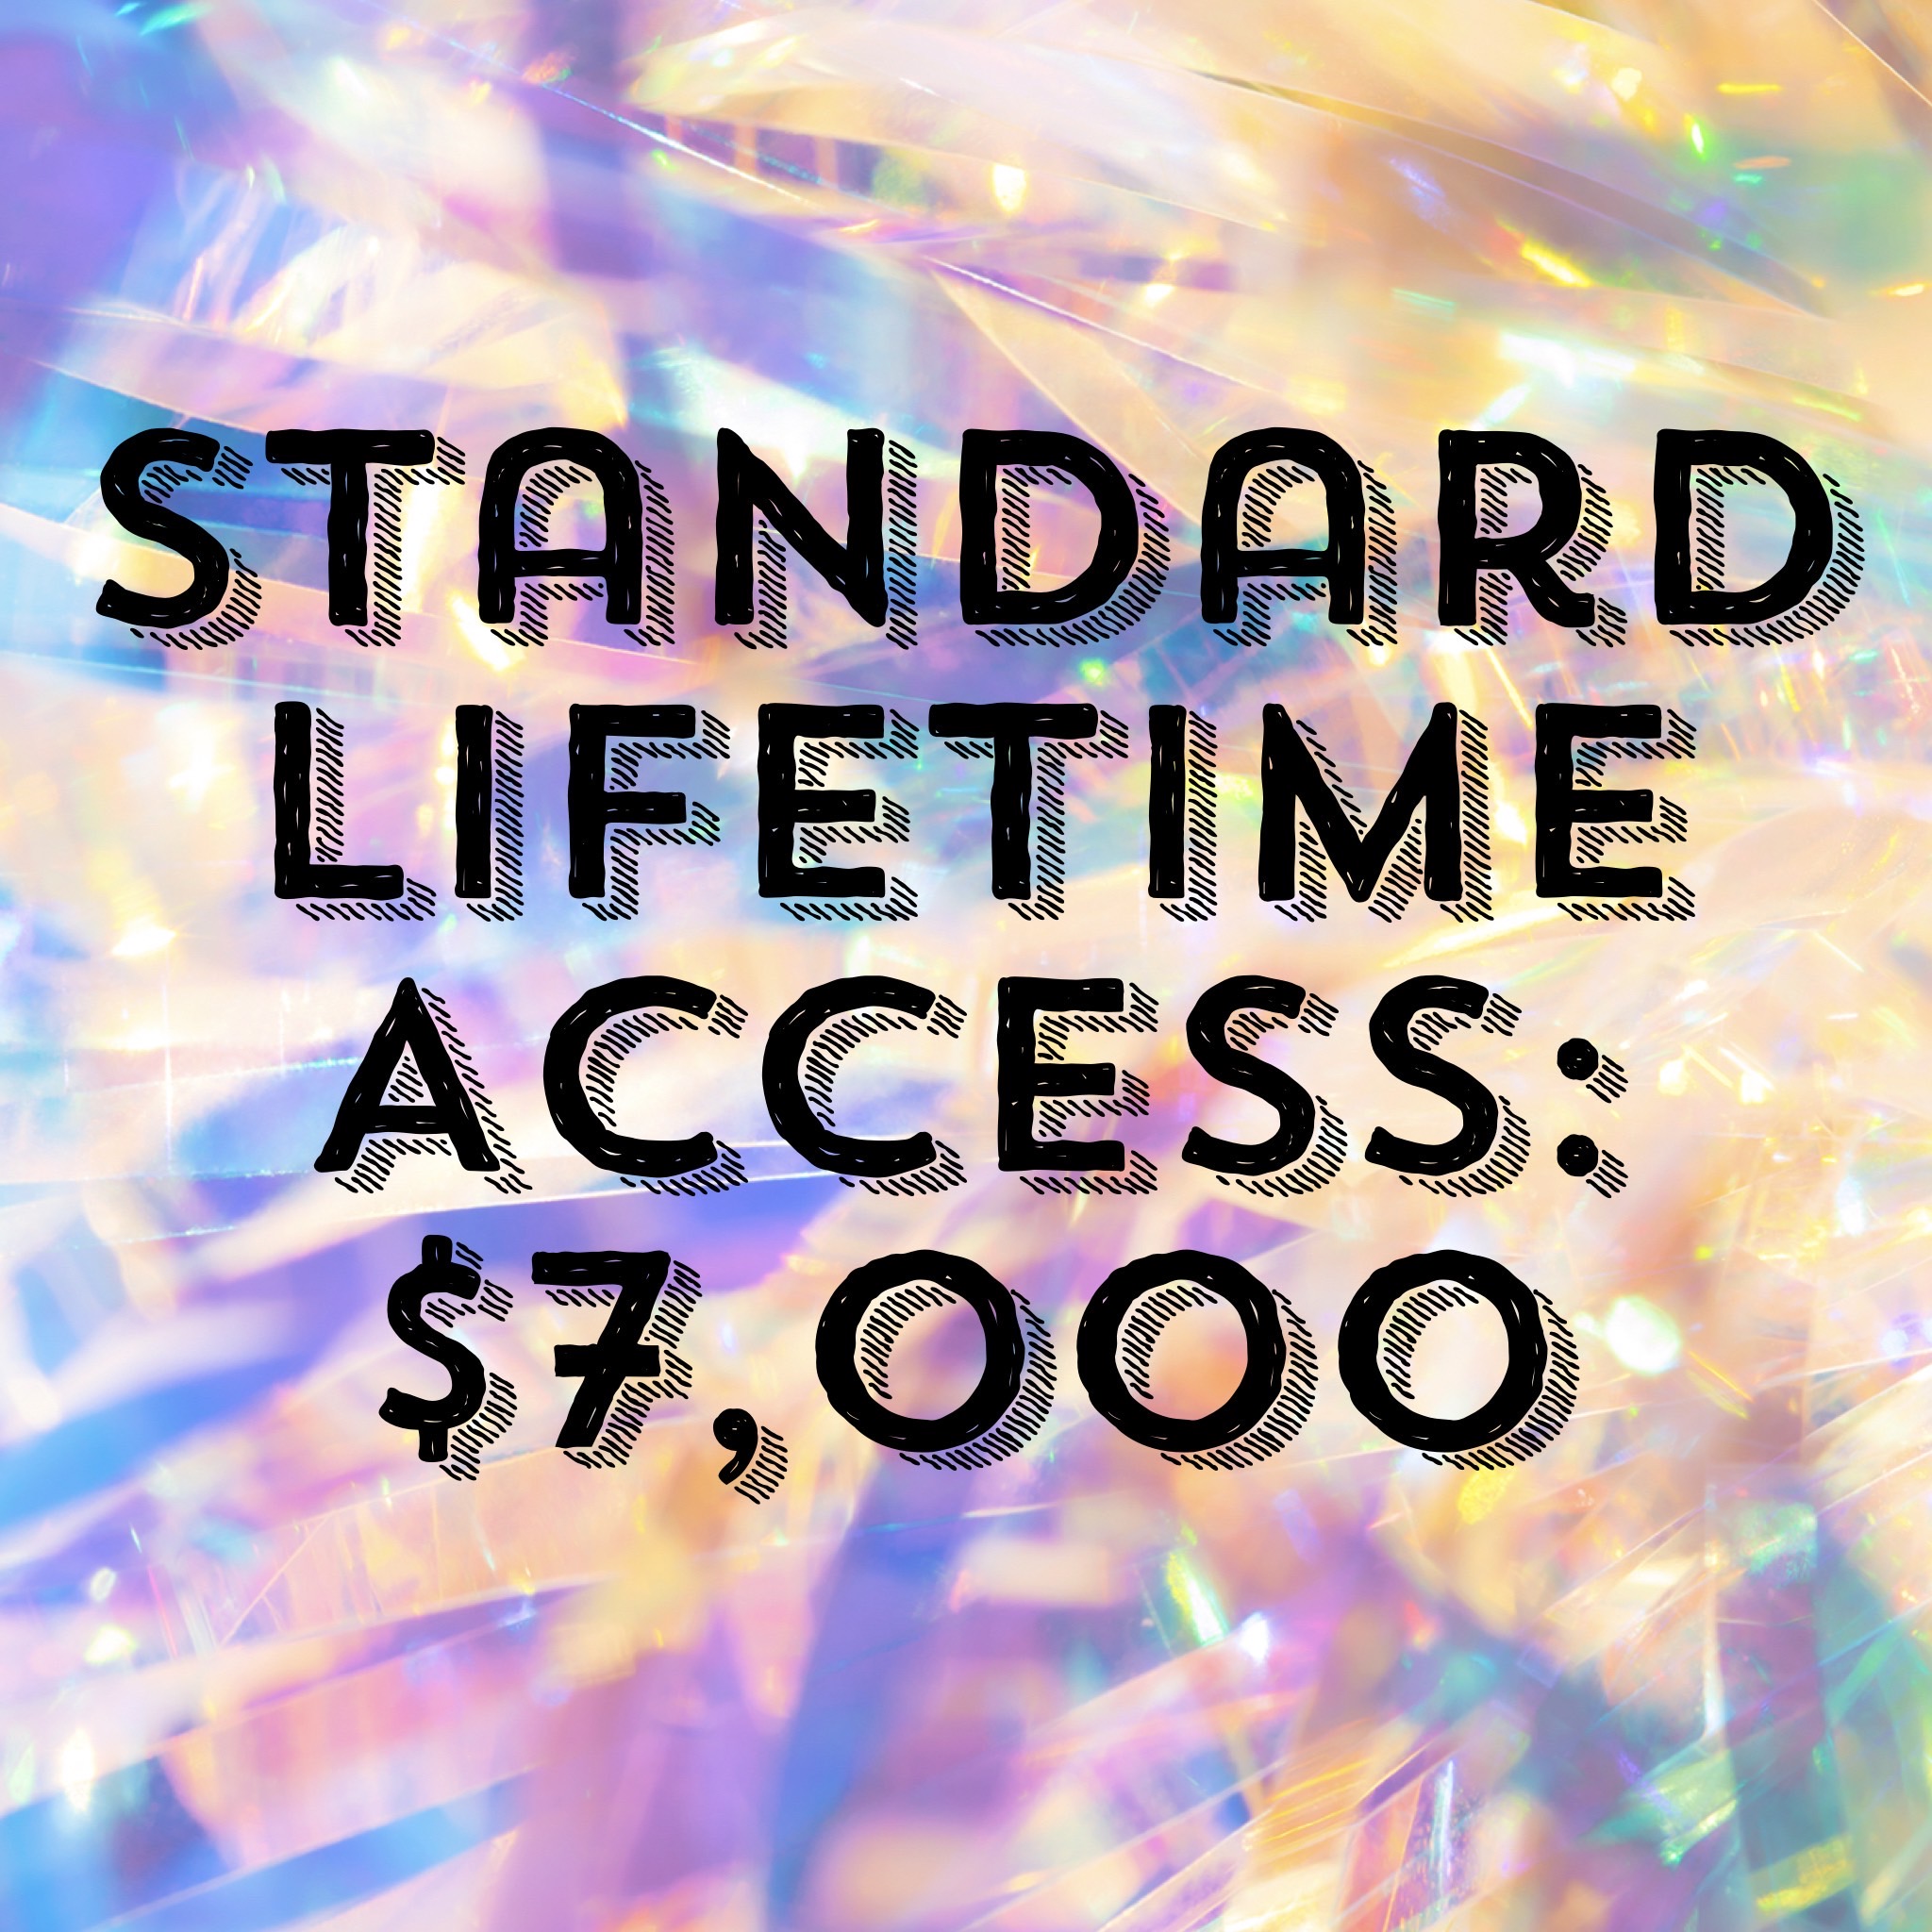 Standard Lifetime Access: $7,000